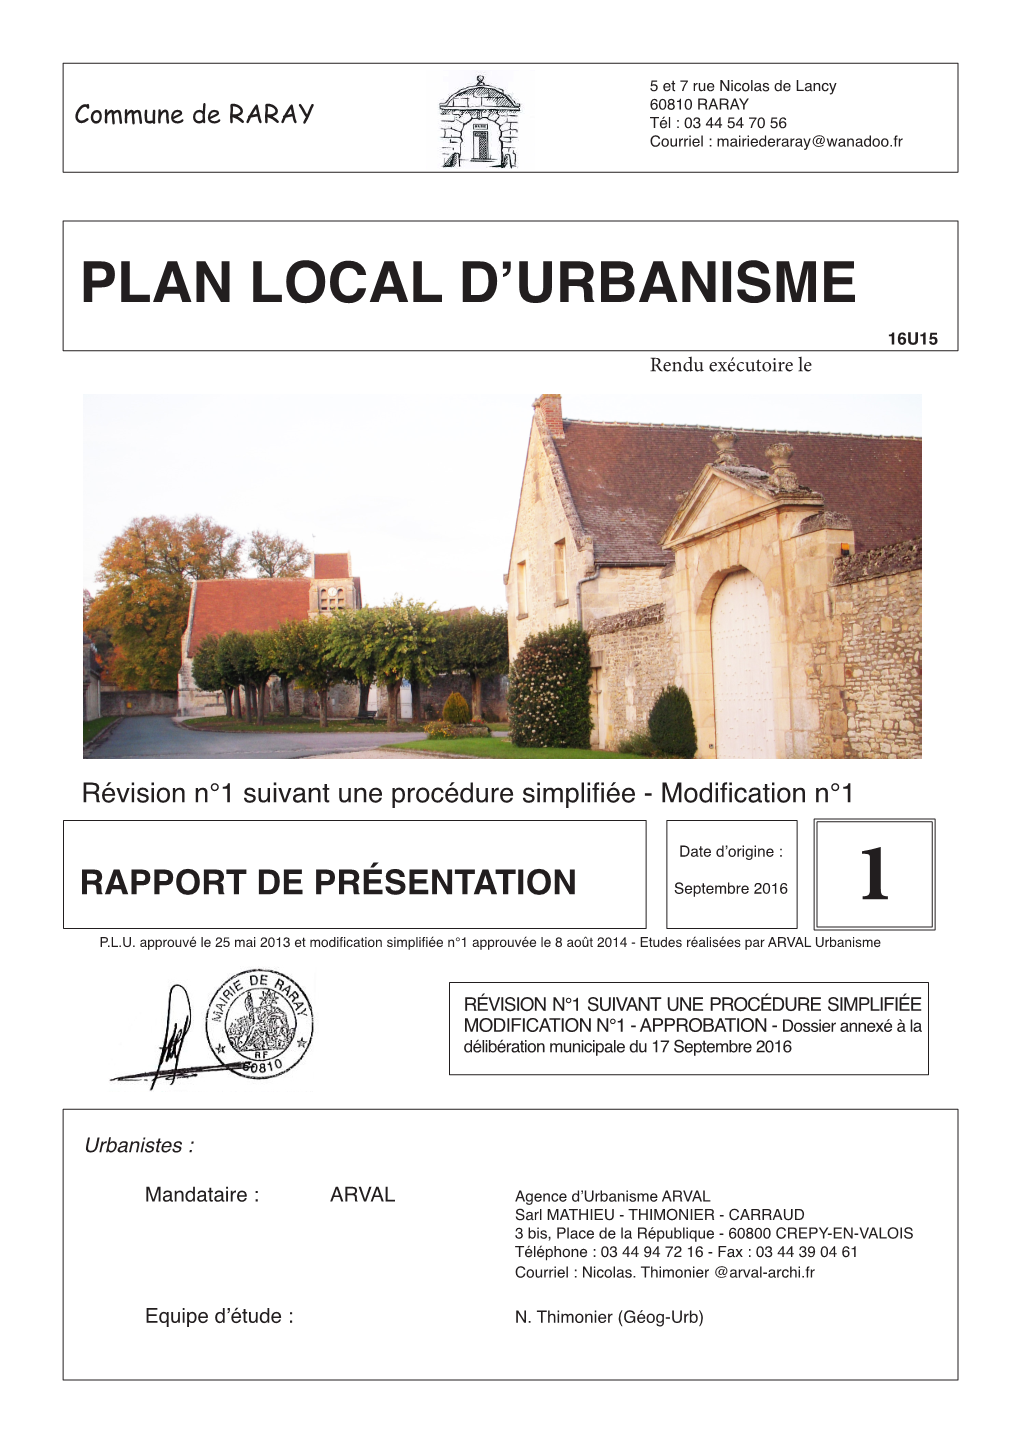 Plan Local D'urbanisme (PLU) Est L'un Des Instruments De L'urbanisme Issu De La Loi Solidarité Et Renouvellement Urbains De Décembre 2000